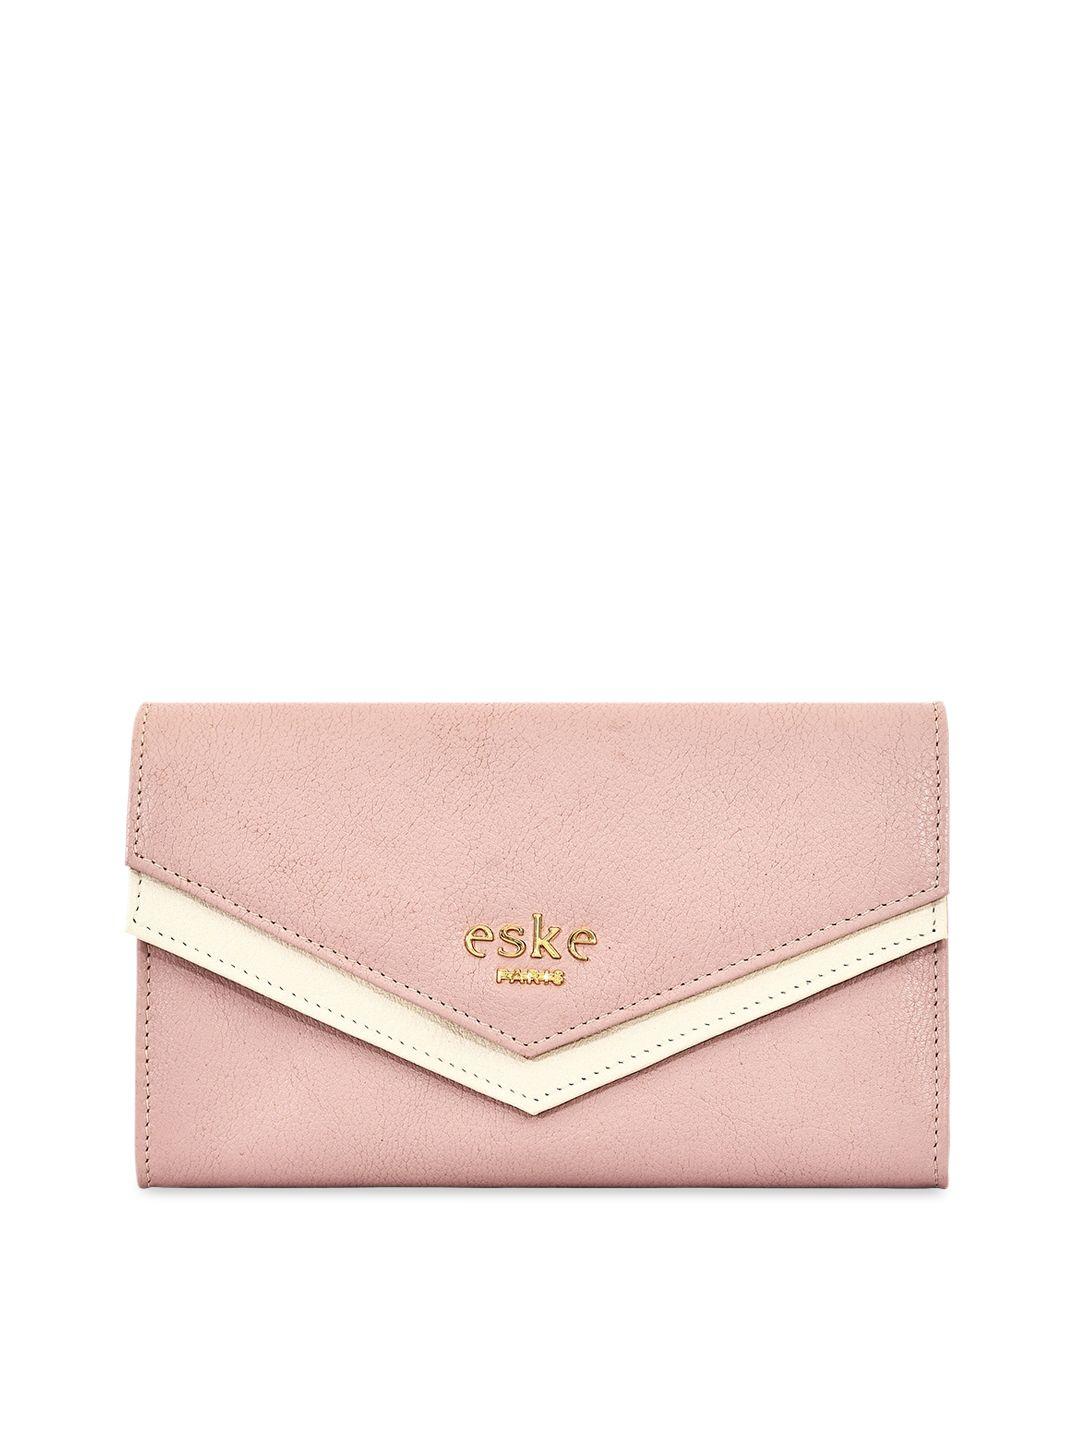 eske women pink solid envelope